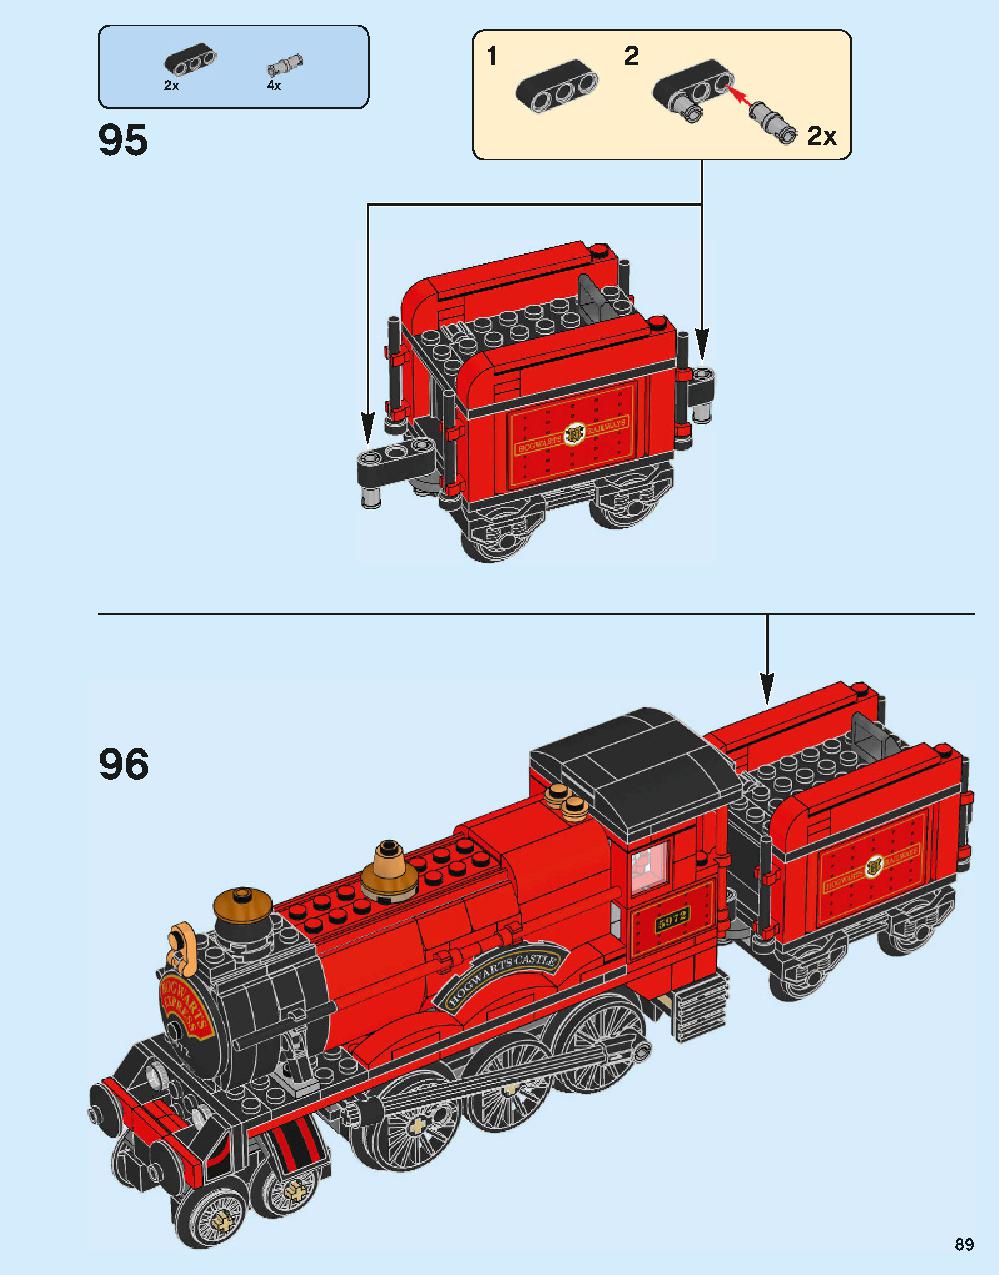 ホグワーツ特急 75955 レゴの商品情報 レゴの説明書・組立方法 89 page